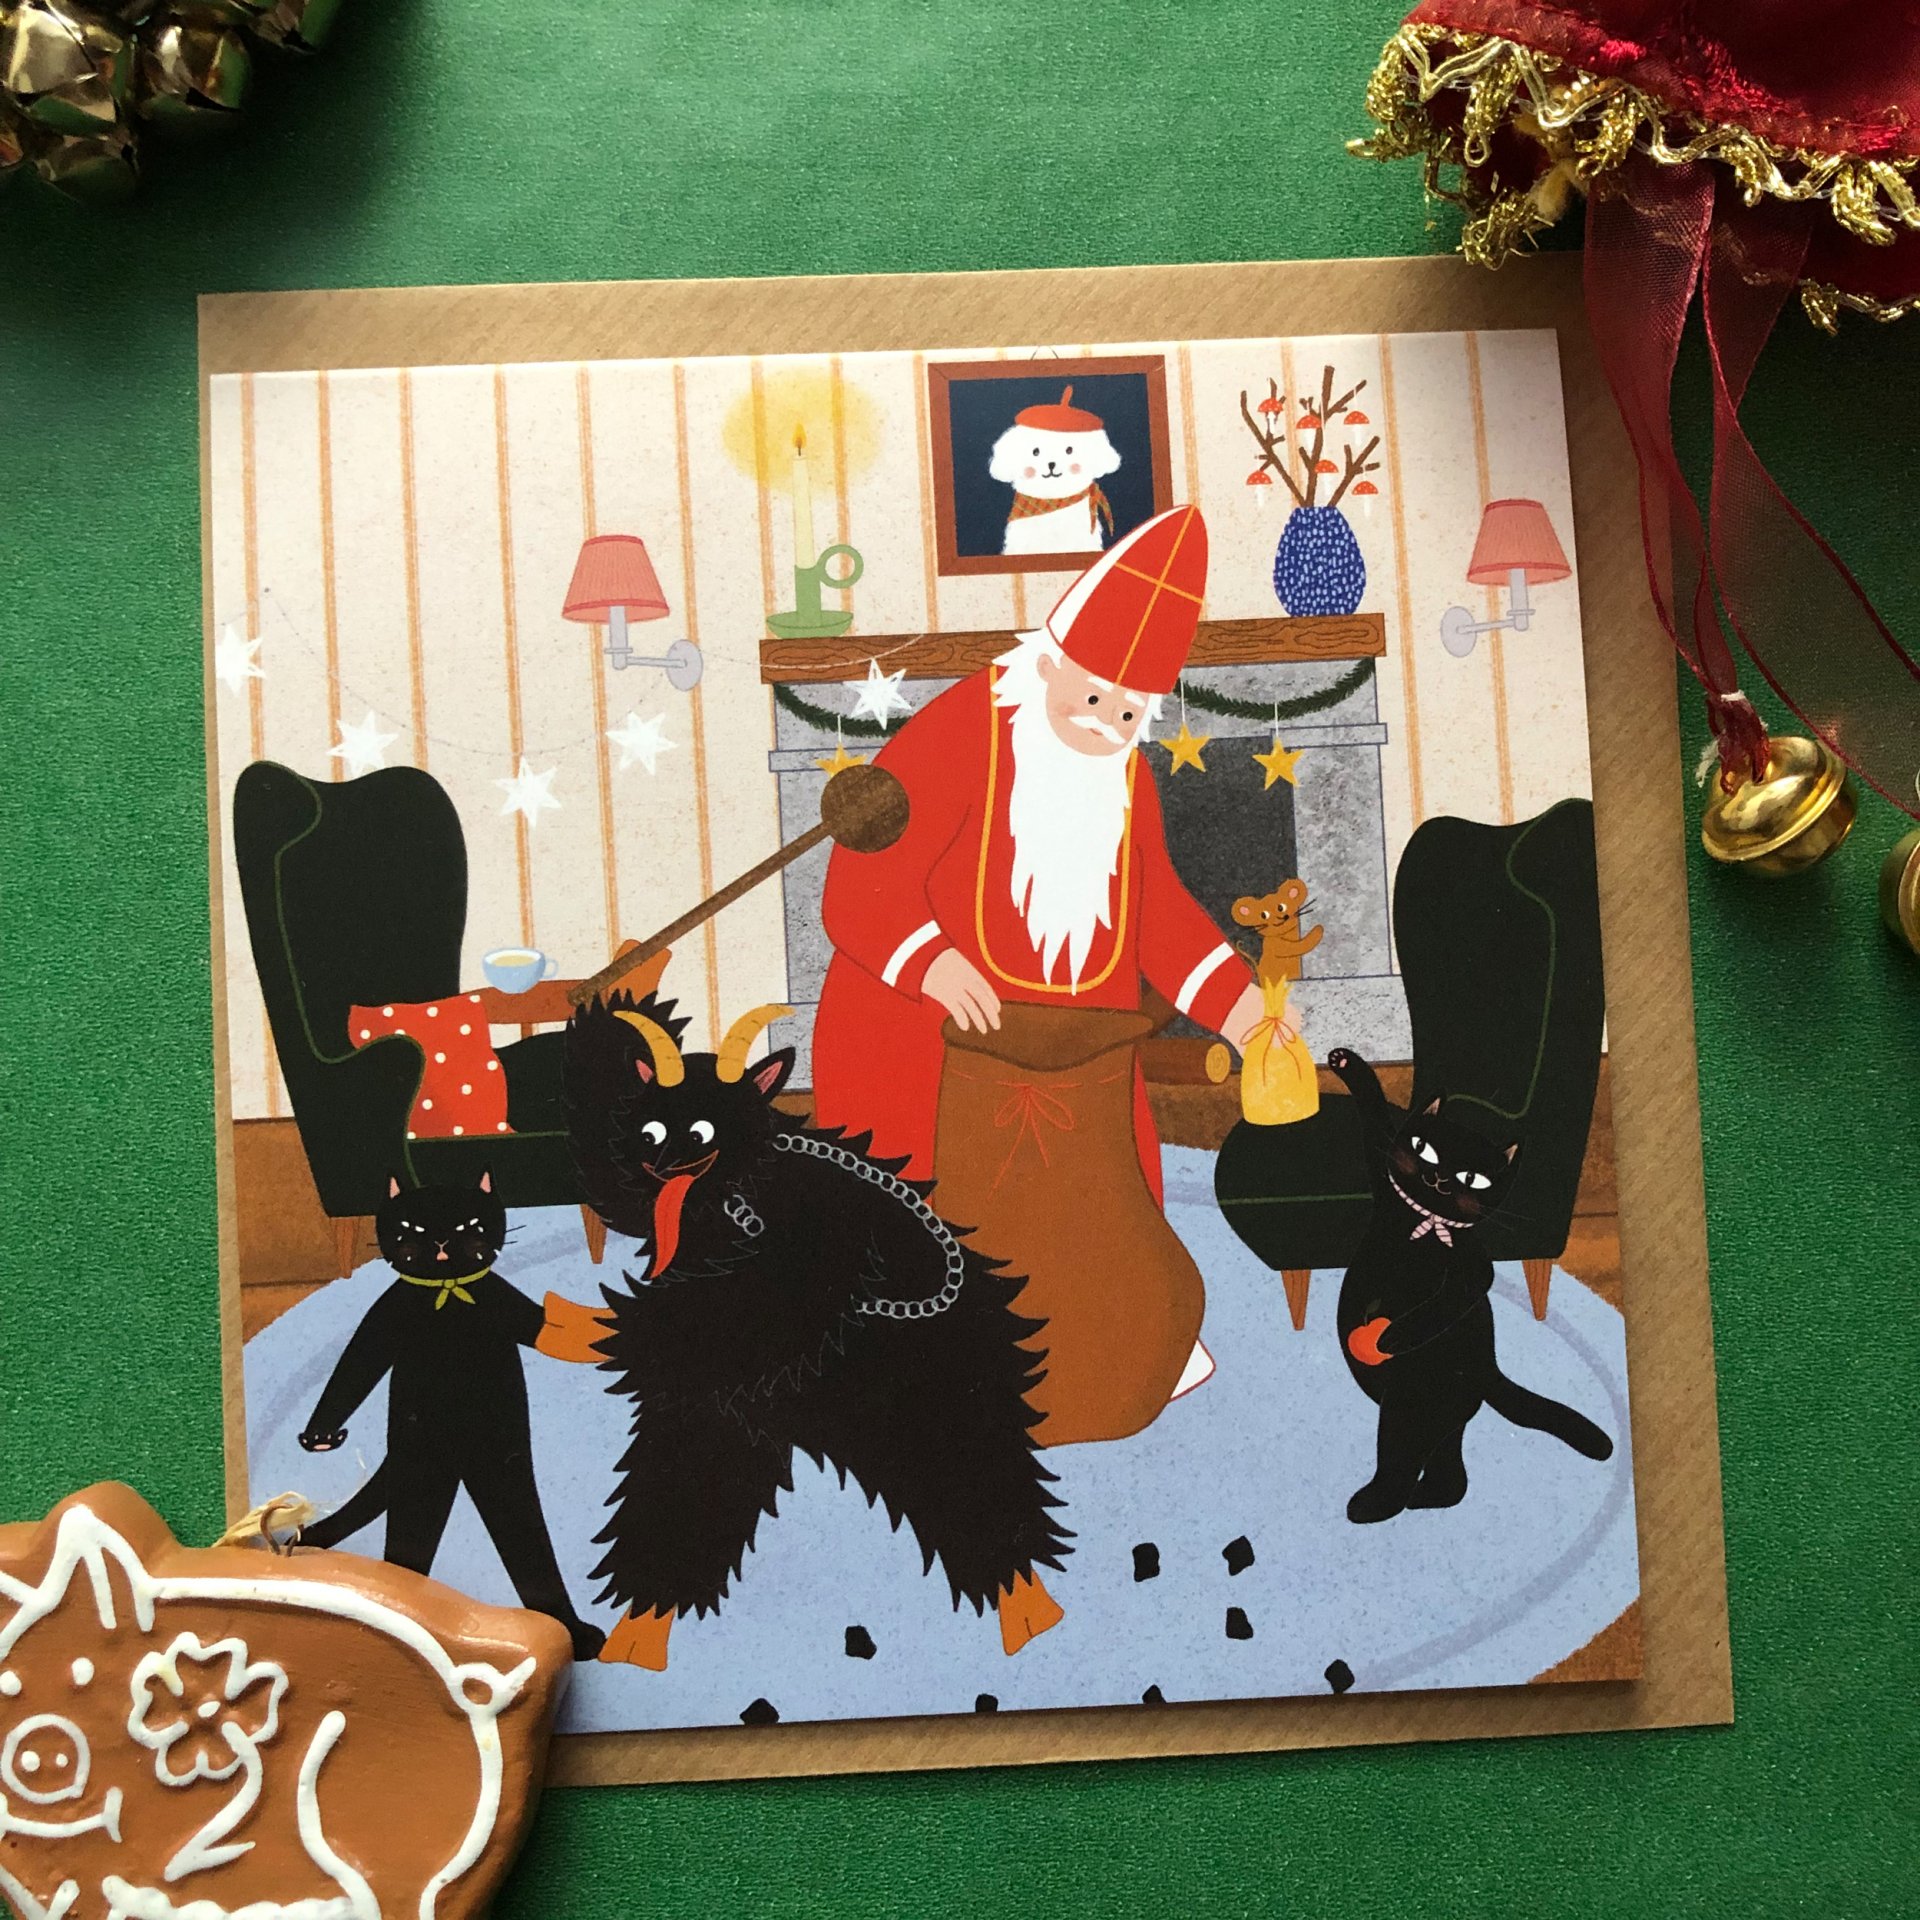 Vianočná pohľadnica s Mikulášom, čertom a mačkami